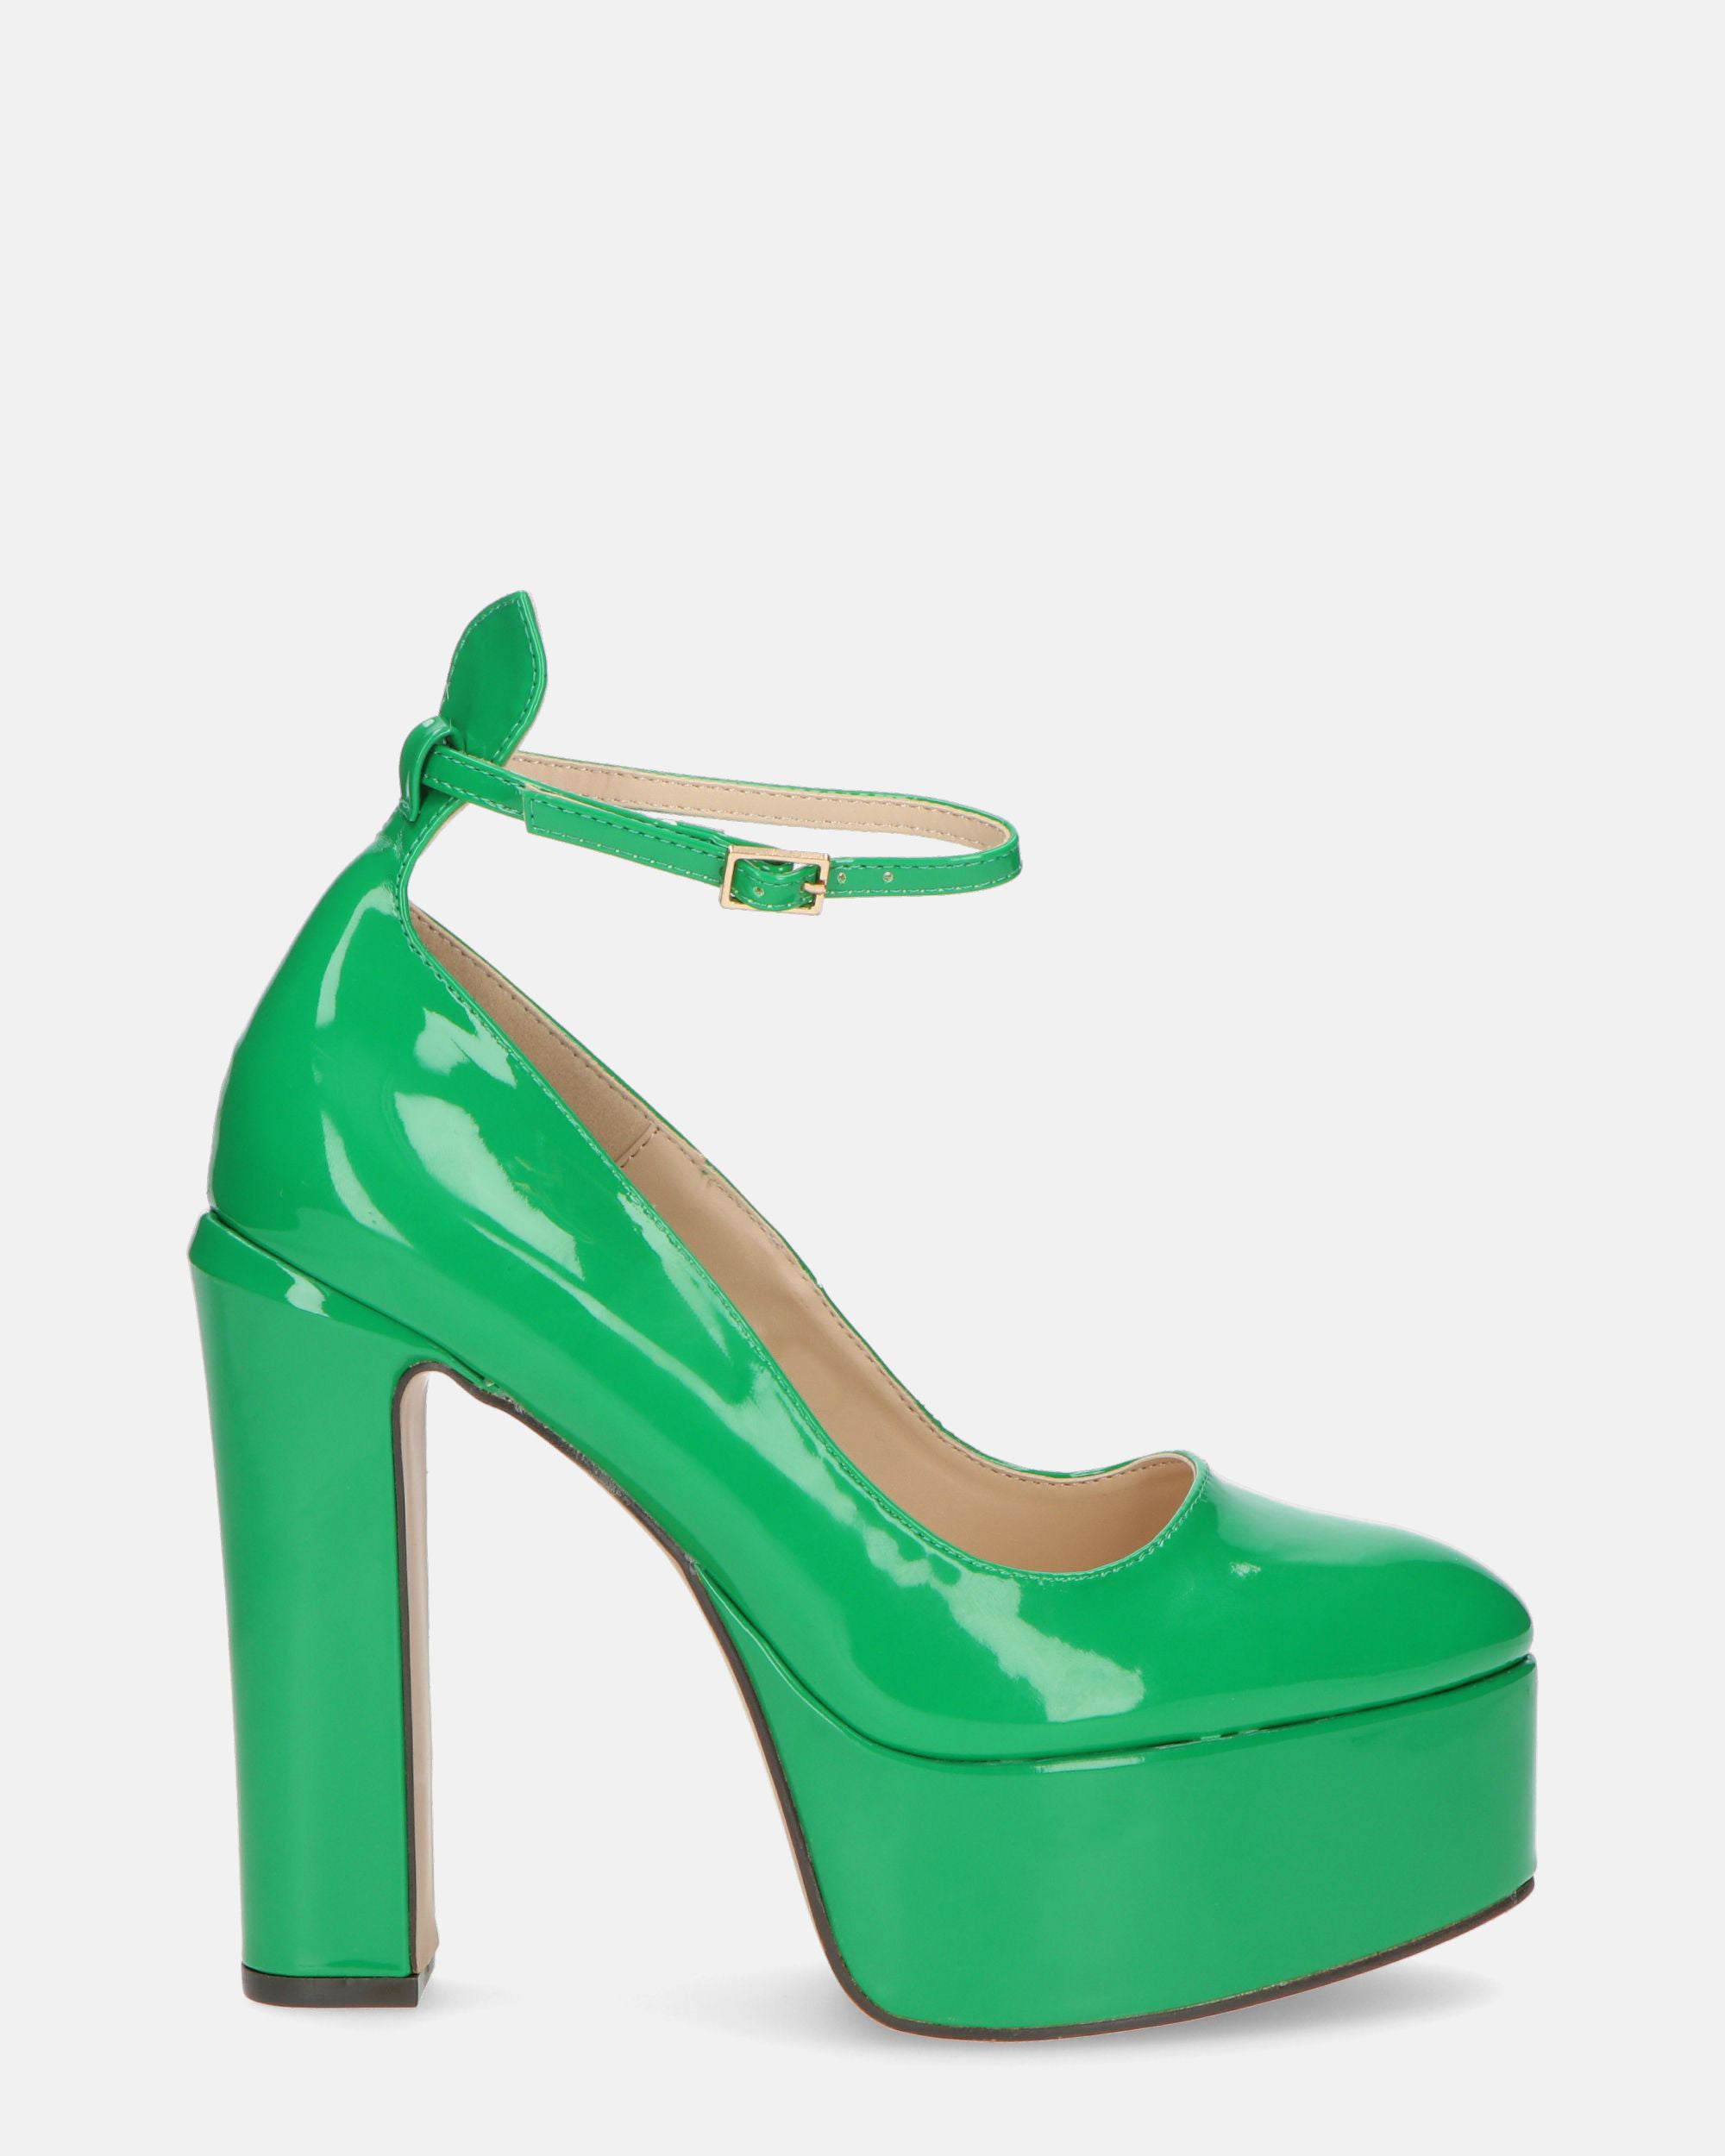 SOLEIL - zapatos de tacón en verde glassy